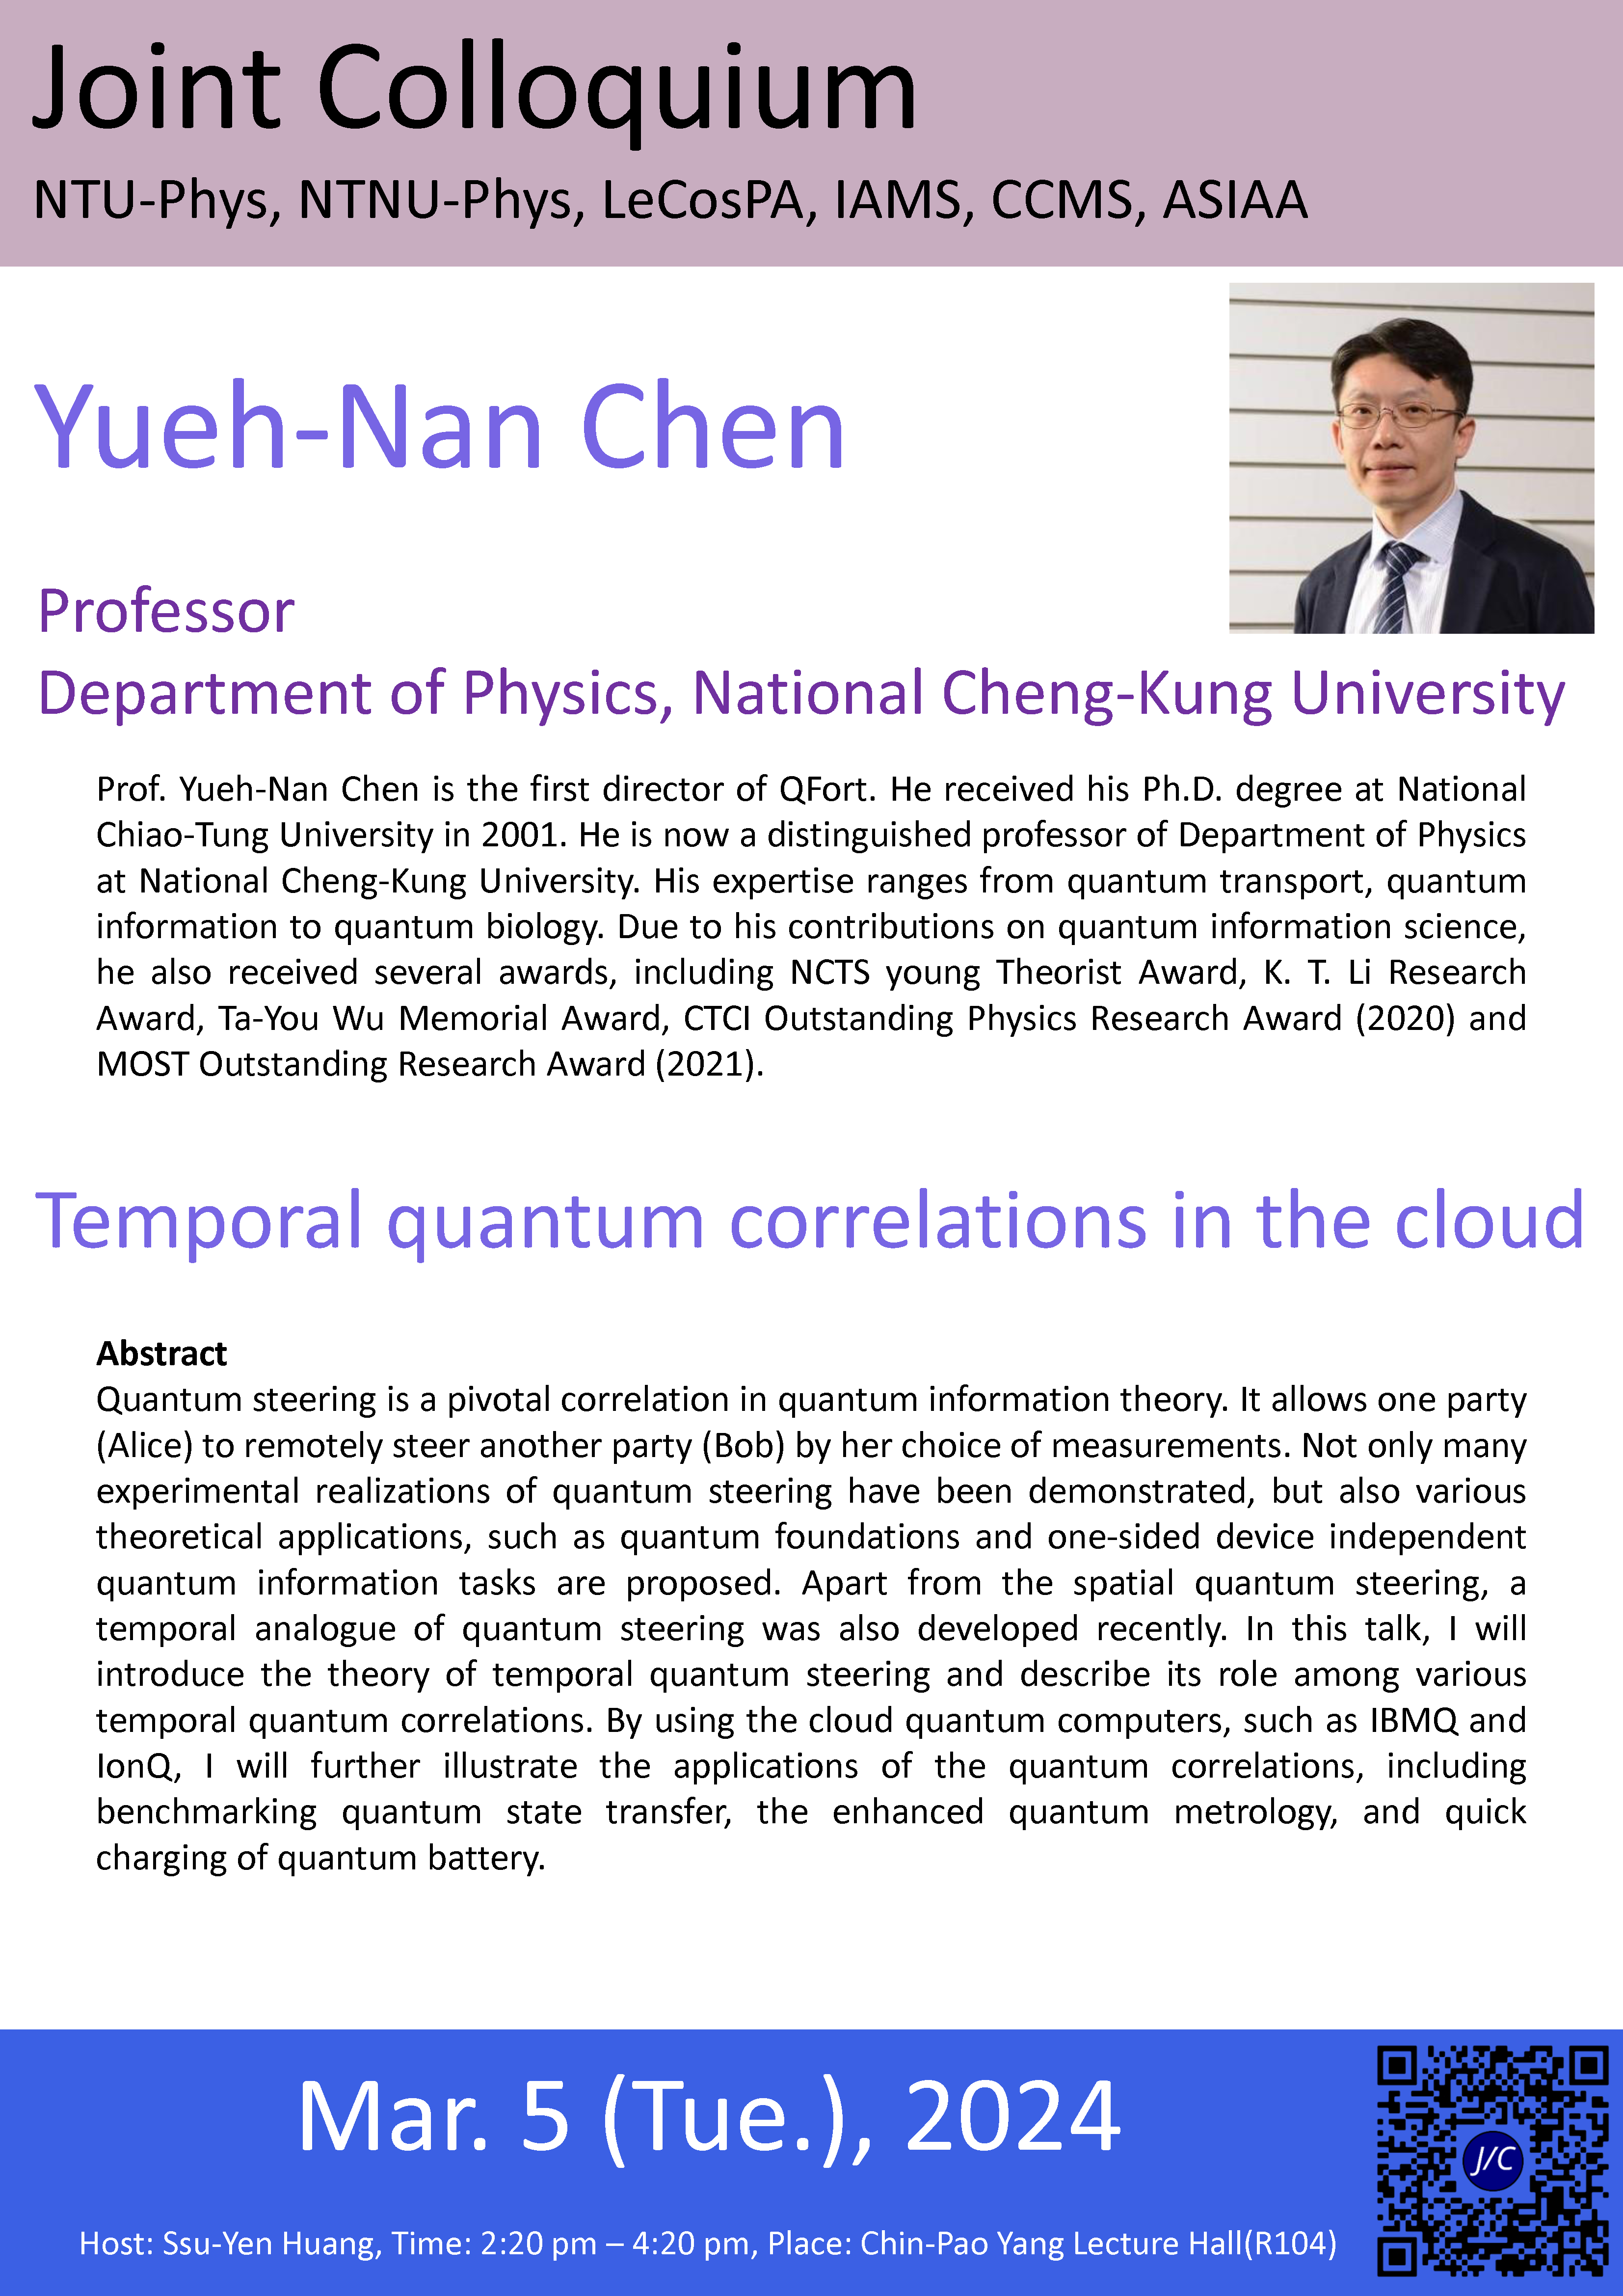 Temporal quantum correlations in the cloud